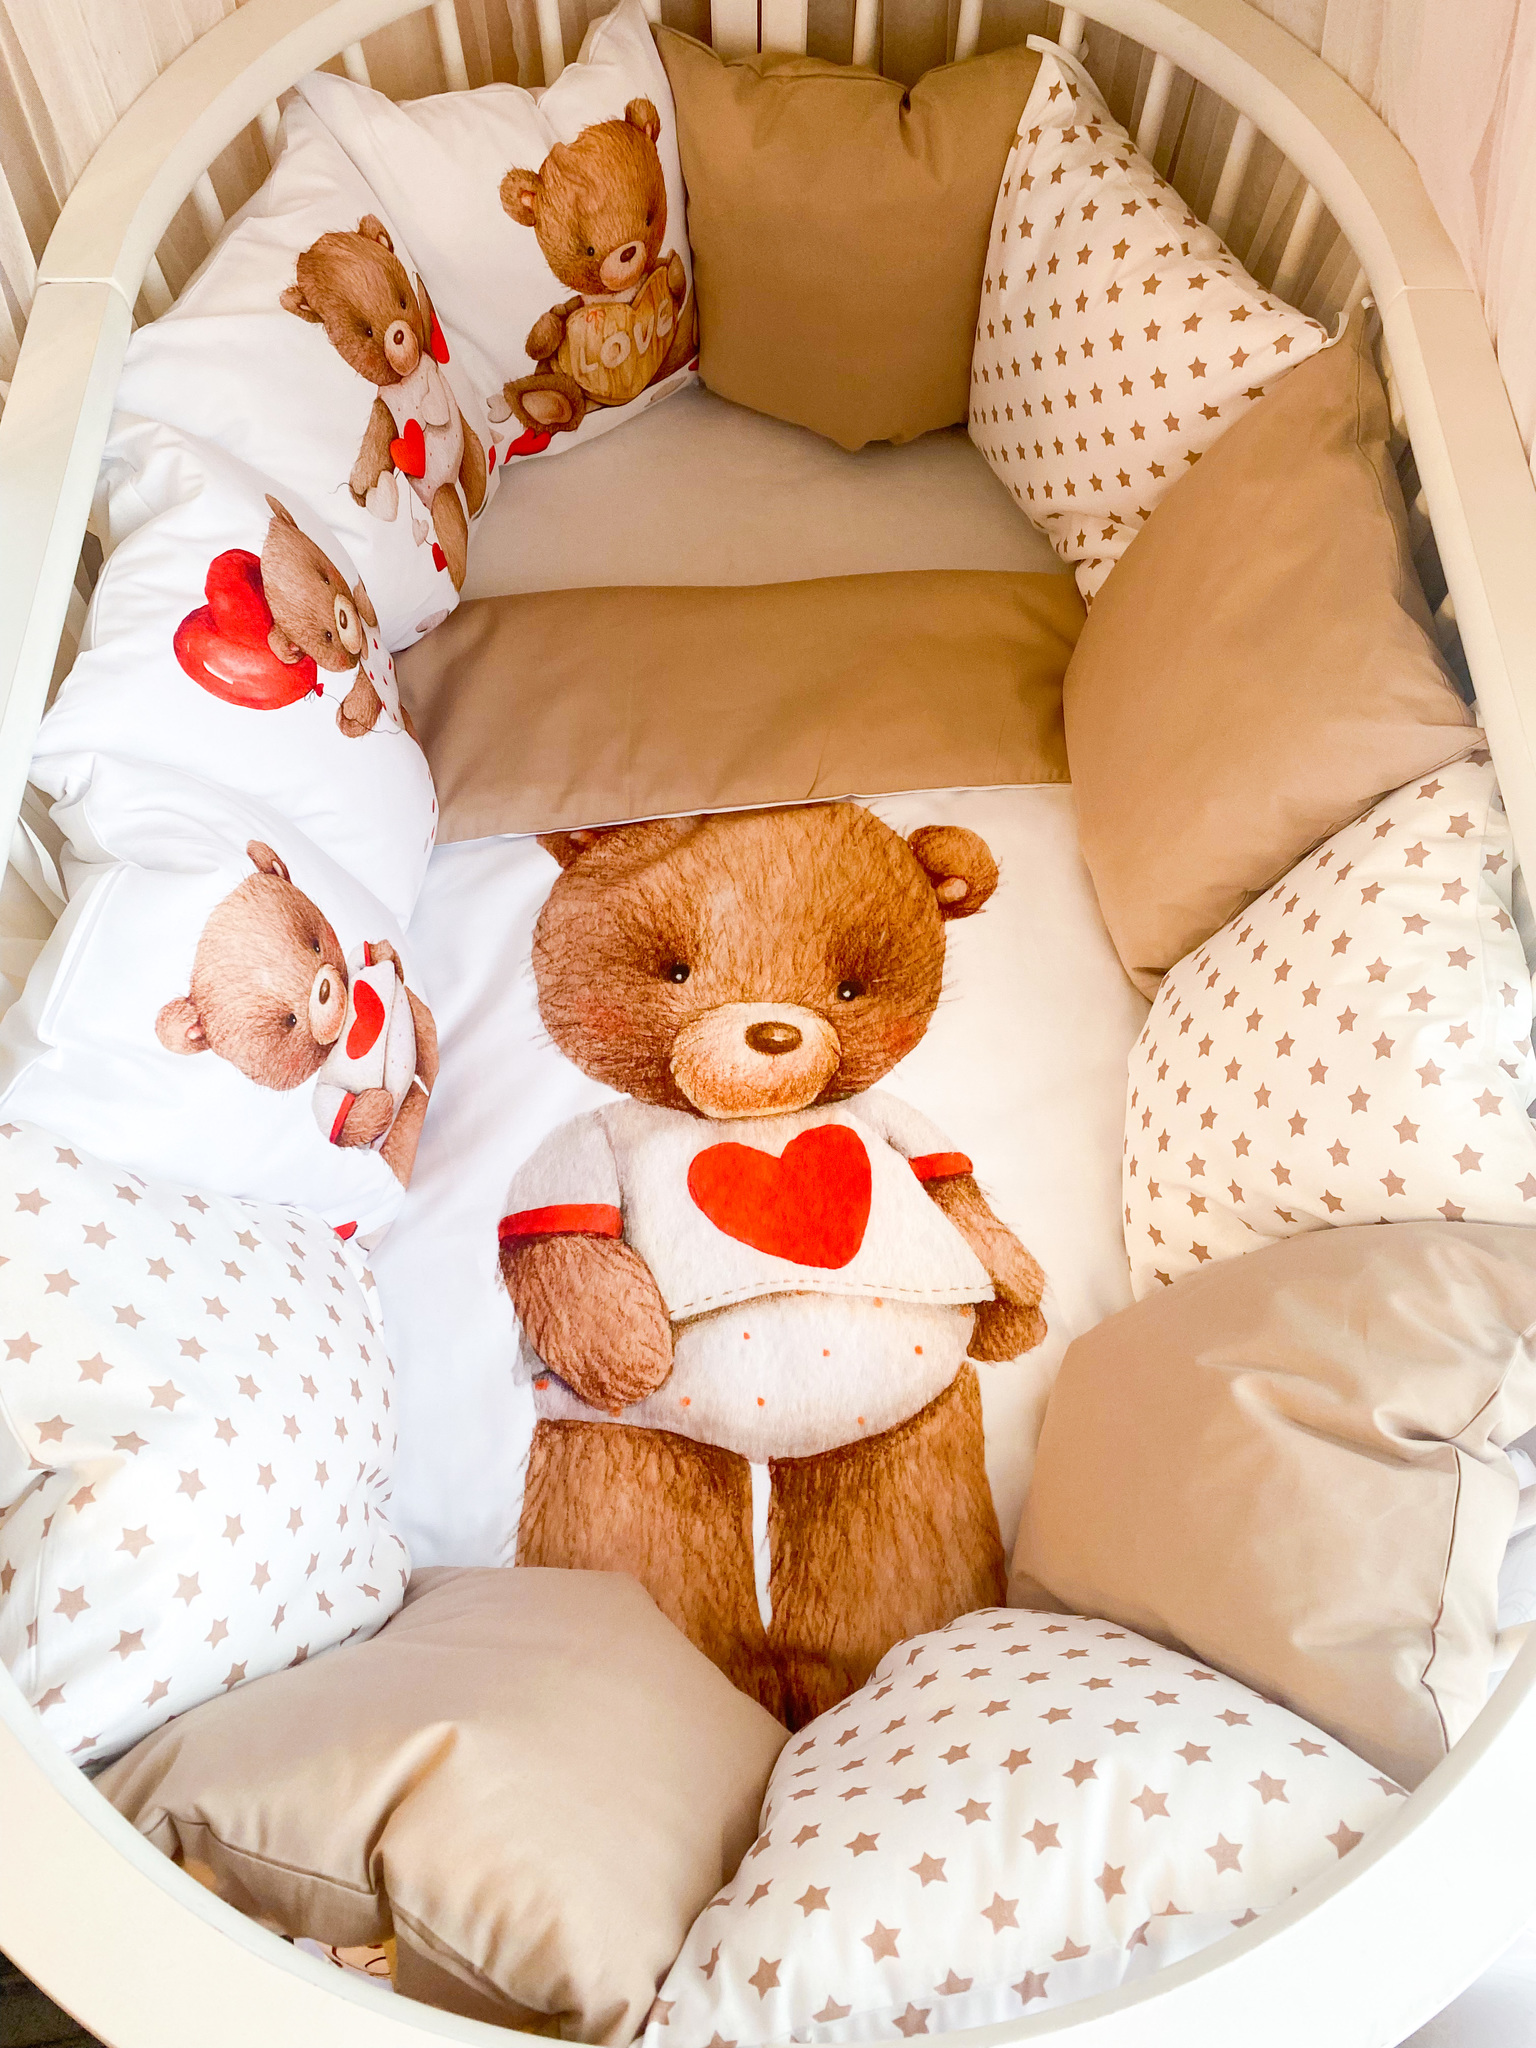 Бортики в кровать для новорожденных